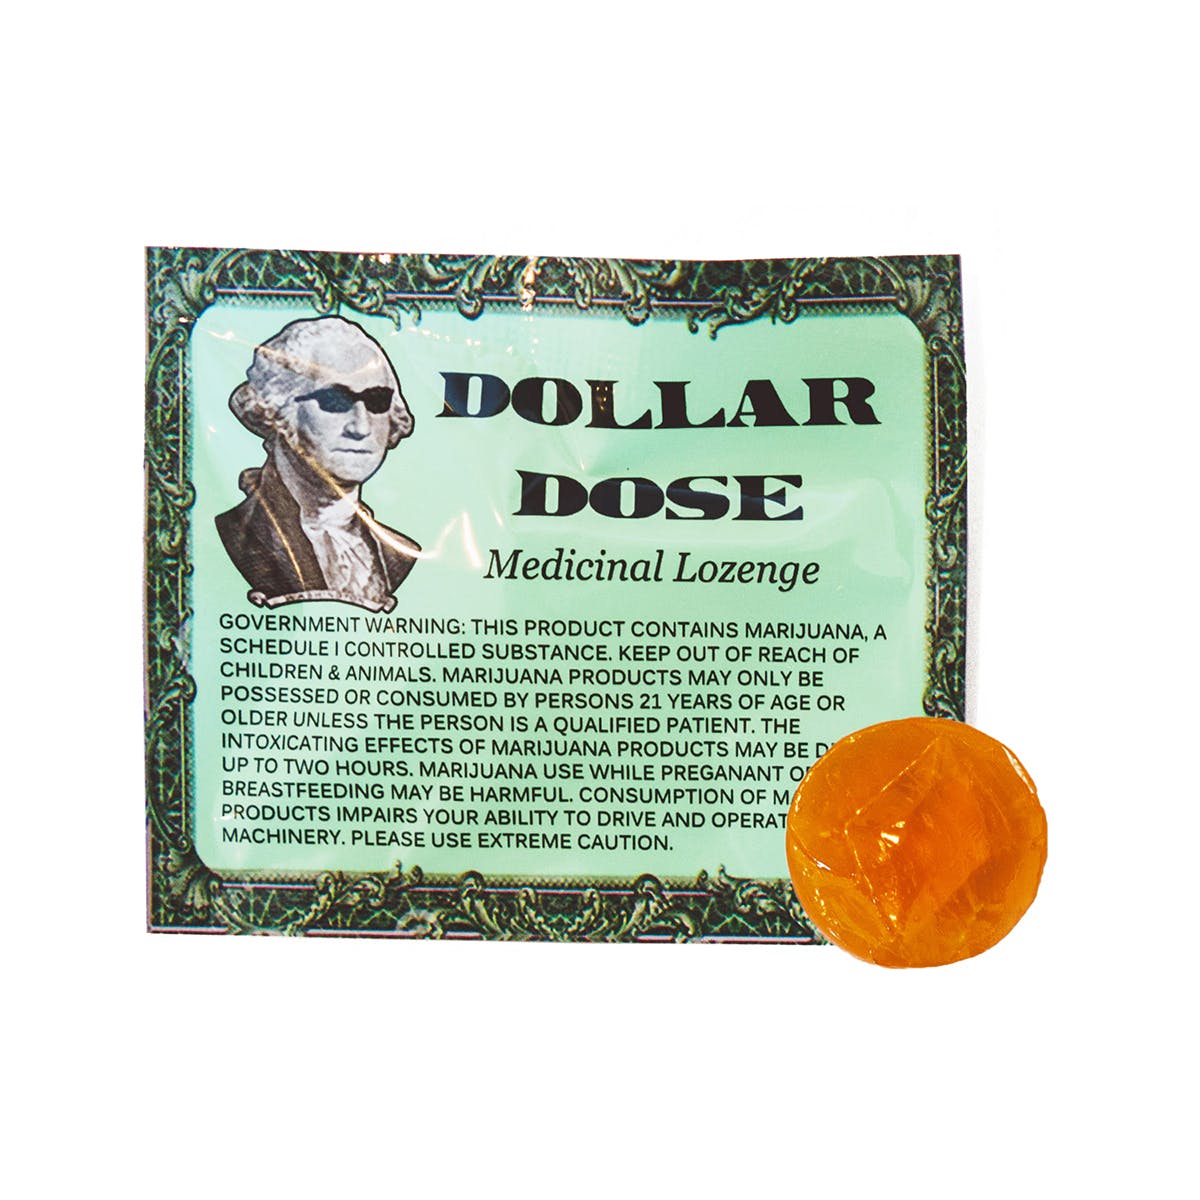 Dollar Dose Original Lozenges